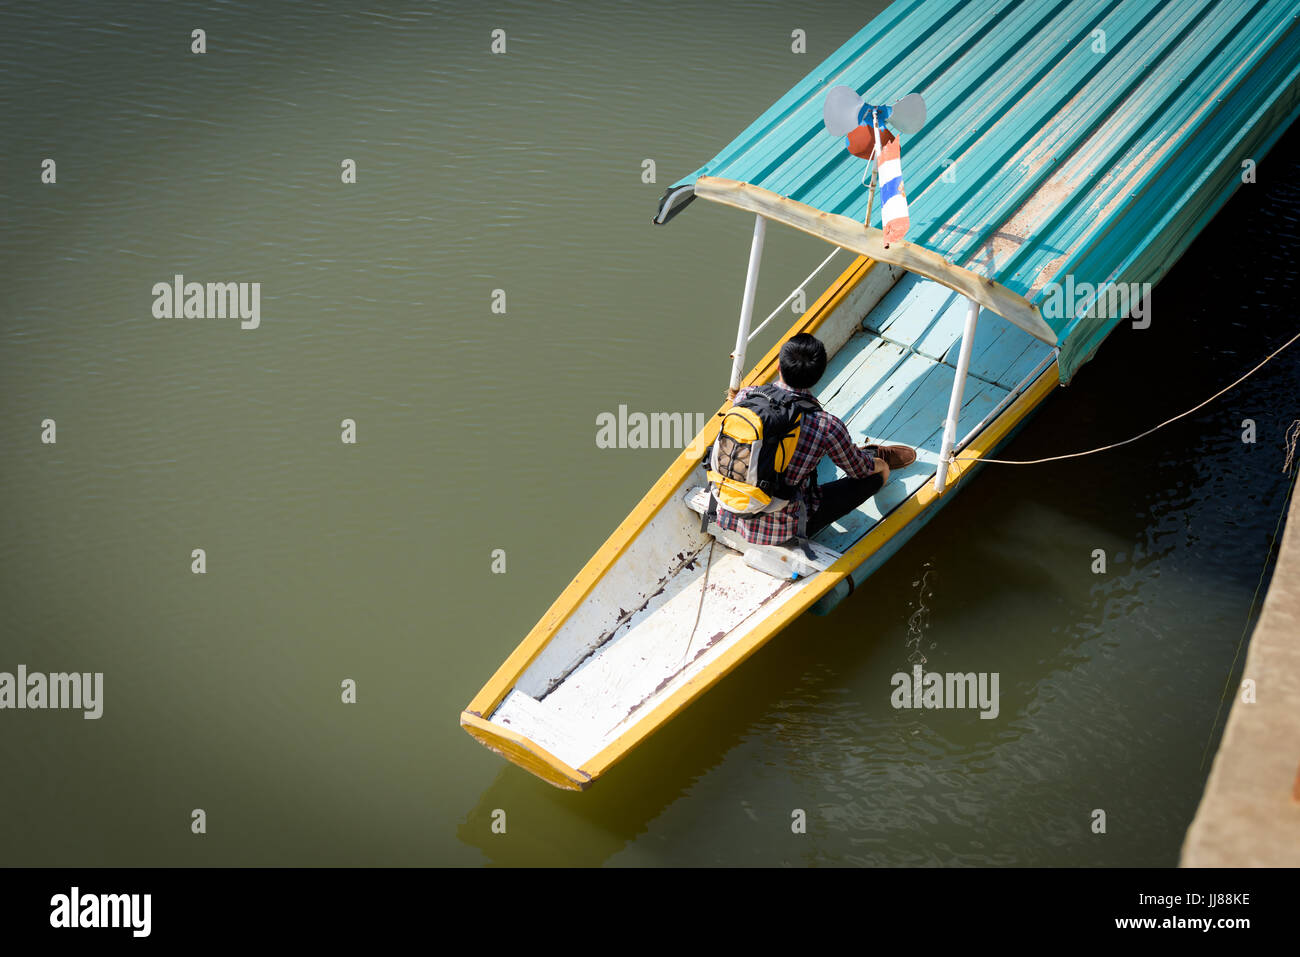 Junge asiatische Backpacker Tourist ist eine Bootsfahrt auf dem Fluss genießen. Urlaub und Natur Konzepte Stockfoto